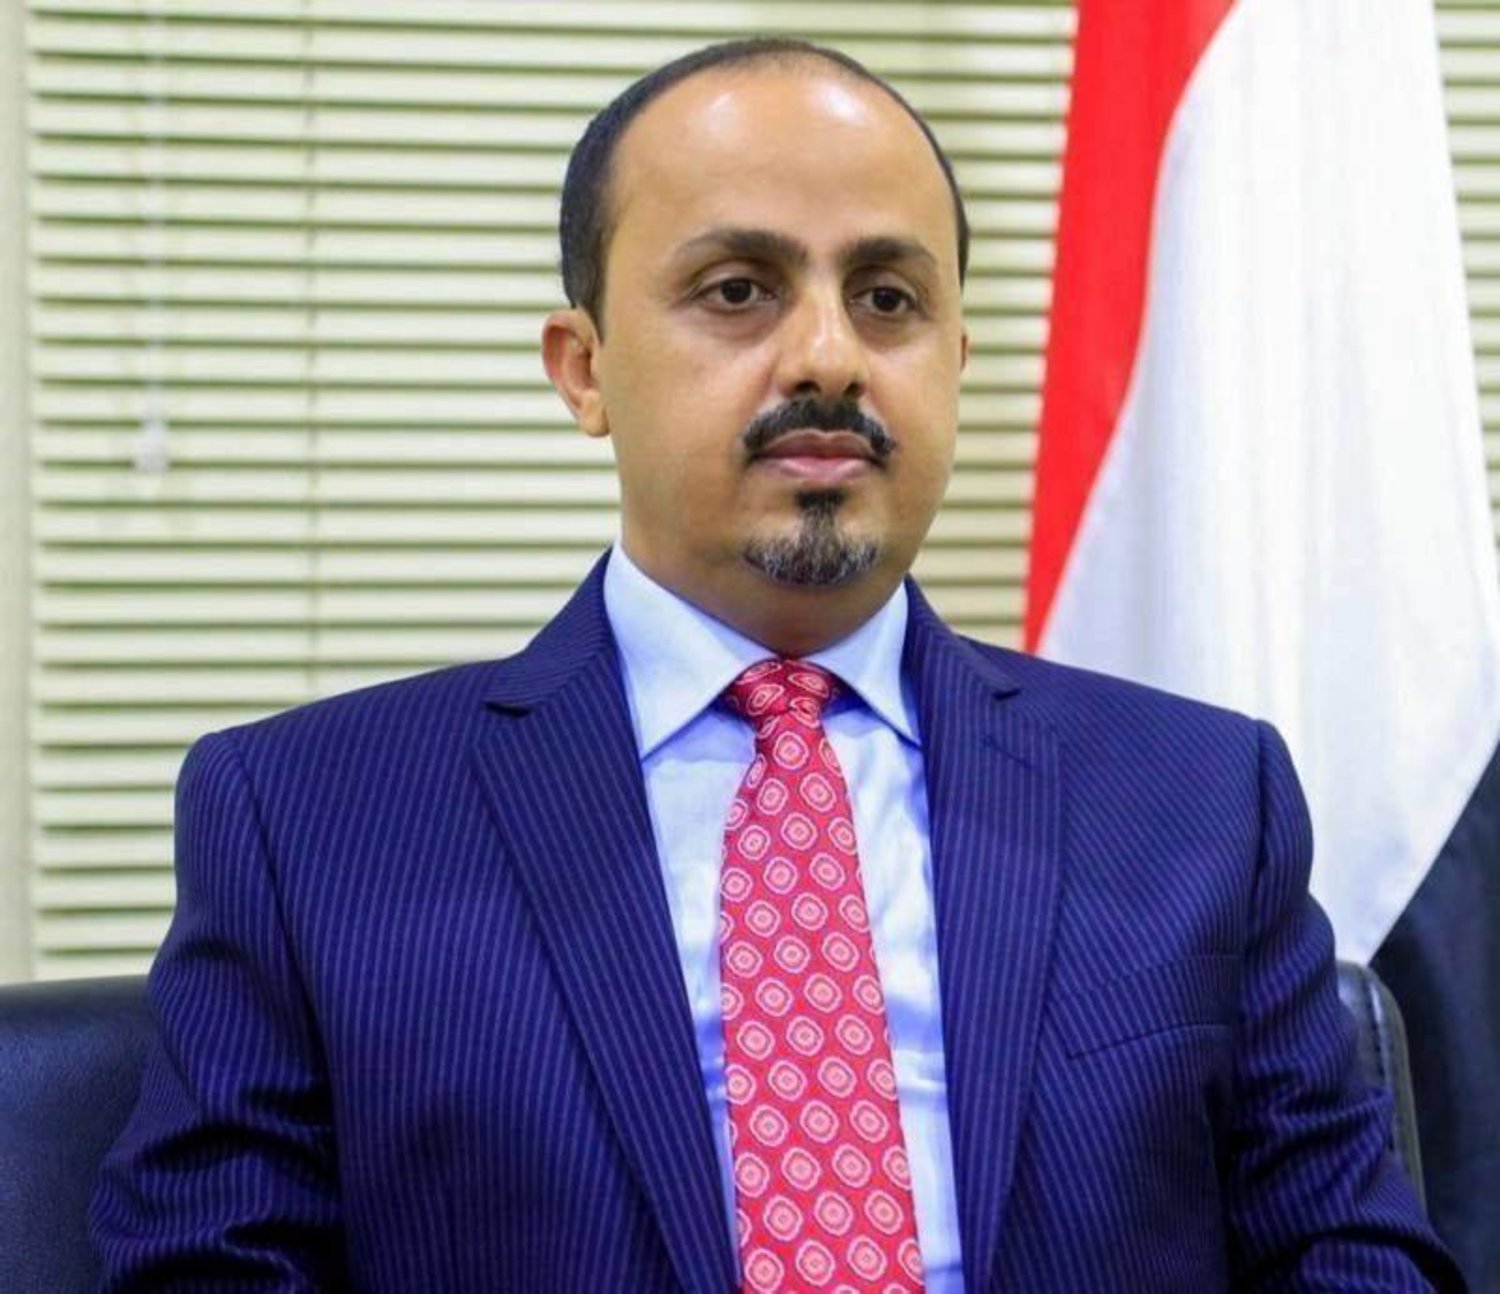 الحكومة اليمنية تقول إن ما كشفته "التلغراف" البريطانية بشأن التعاون بين الحوثيين والقاعدة يؤكّد تحذيراتها السابقة